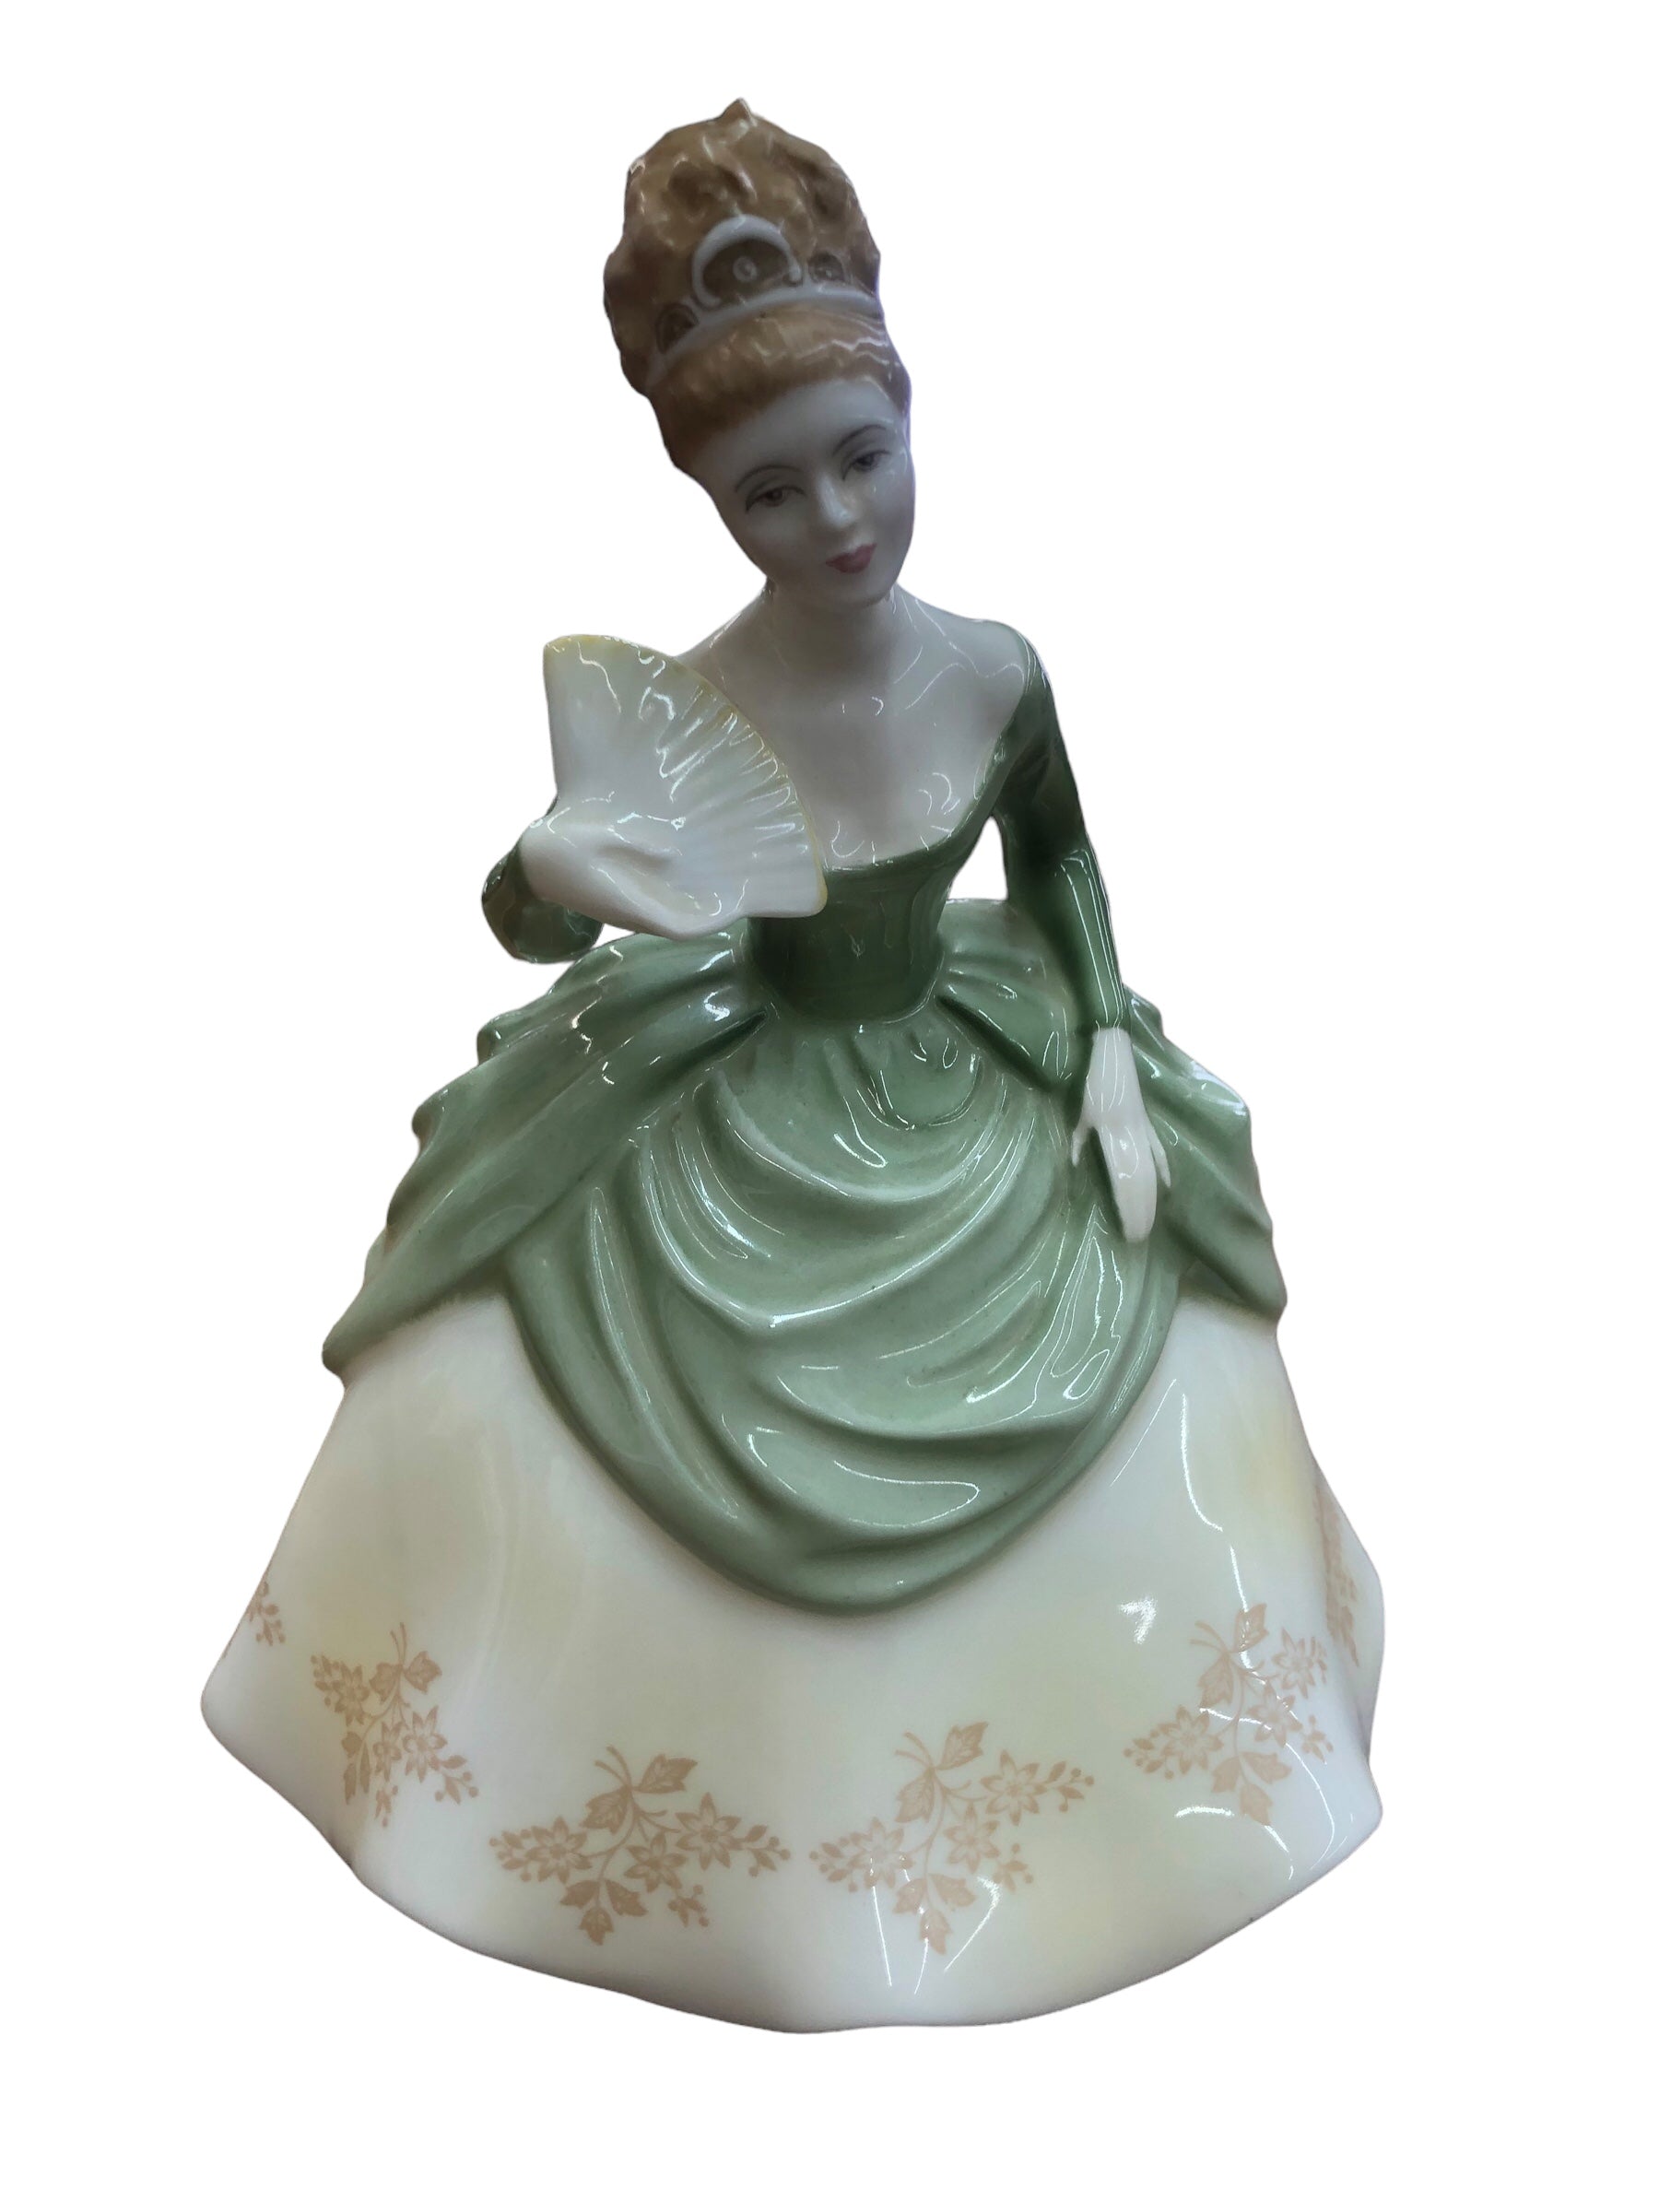 Royal Doulton "Soiree" Figurine